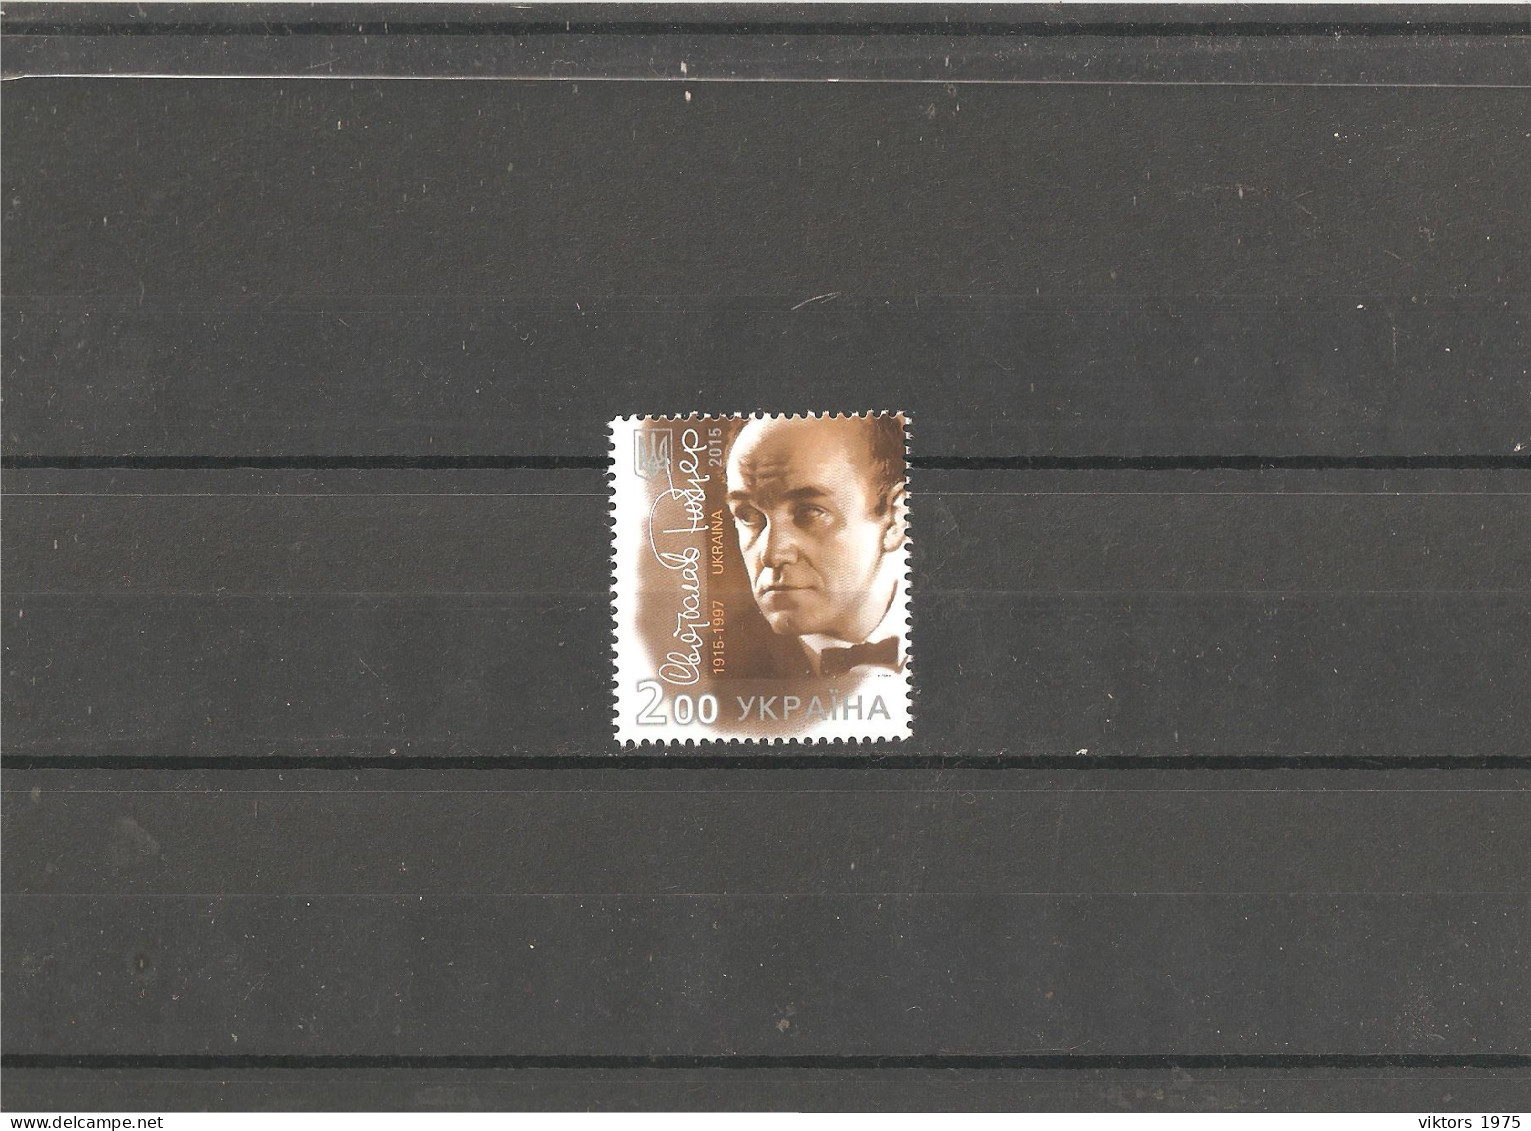 MNH Stamp Nr.1469 In MICHEL Catalog - Ukraine